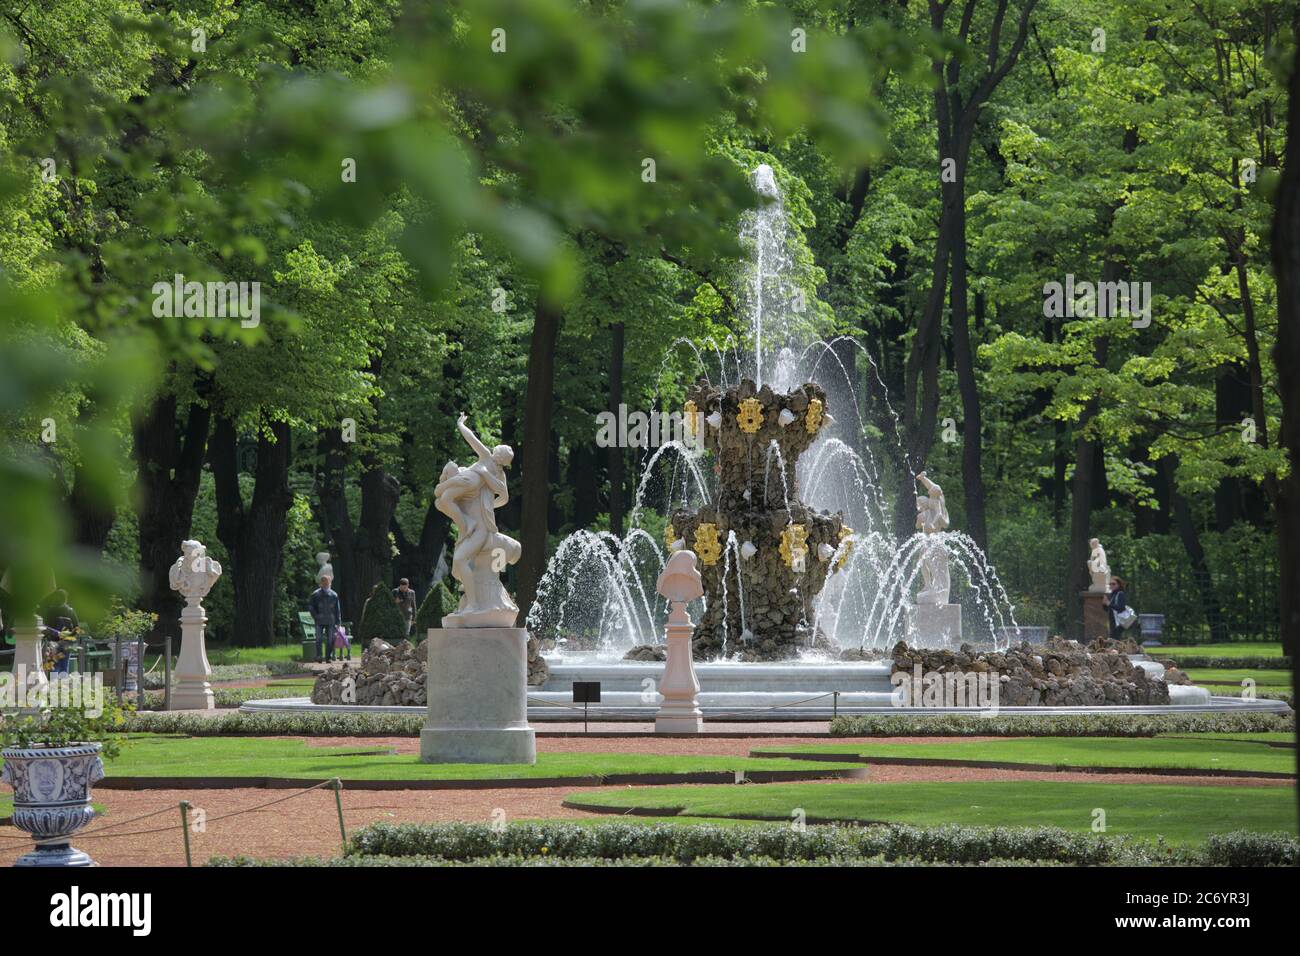 San Pietroburgo, Russia - 19 maggio 2018: Persone che camminano alla fontana nel Giardino d'Estate. Fondato nel 1704, il giardino è il luogo preferito per il tempo libero nel cuore della città Foto Stock